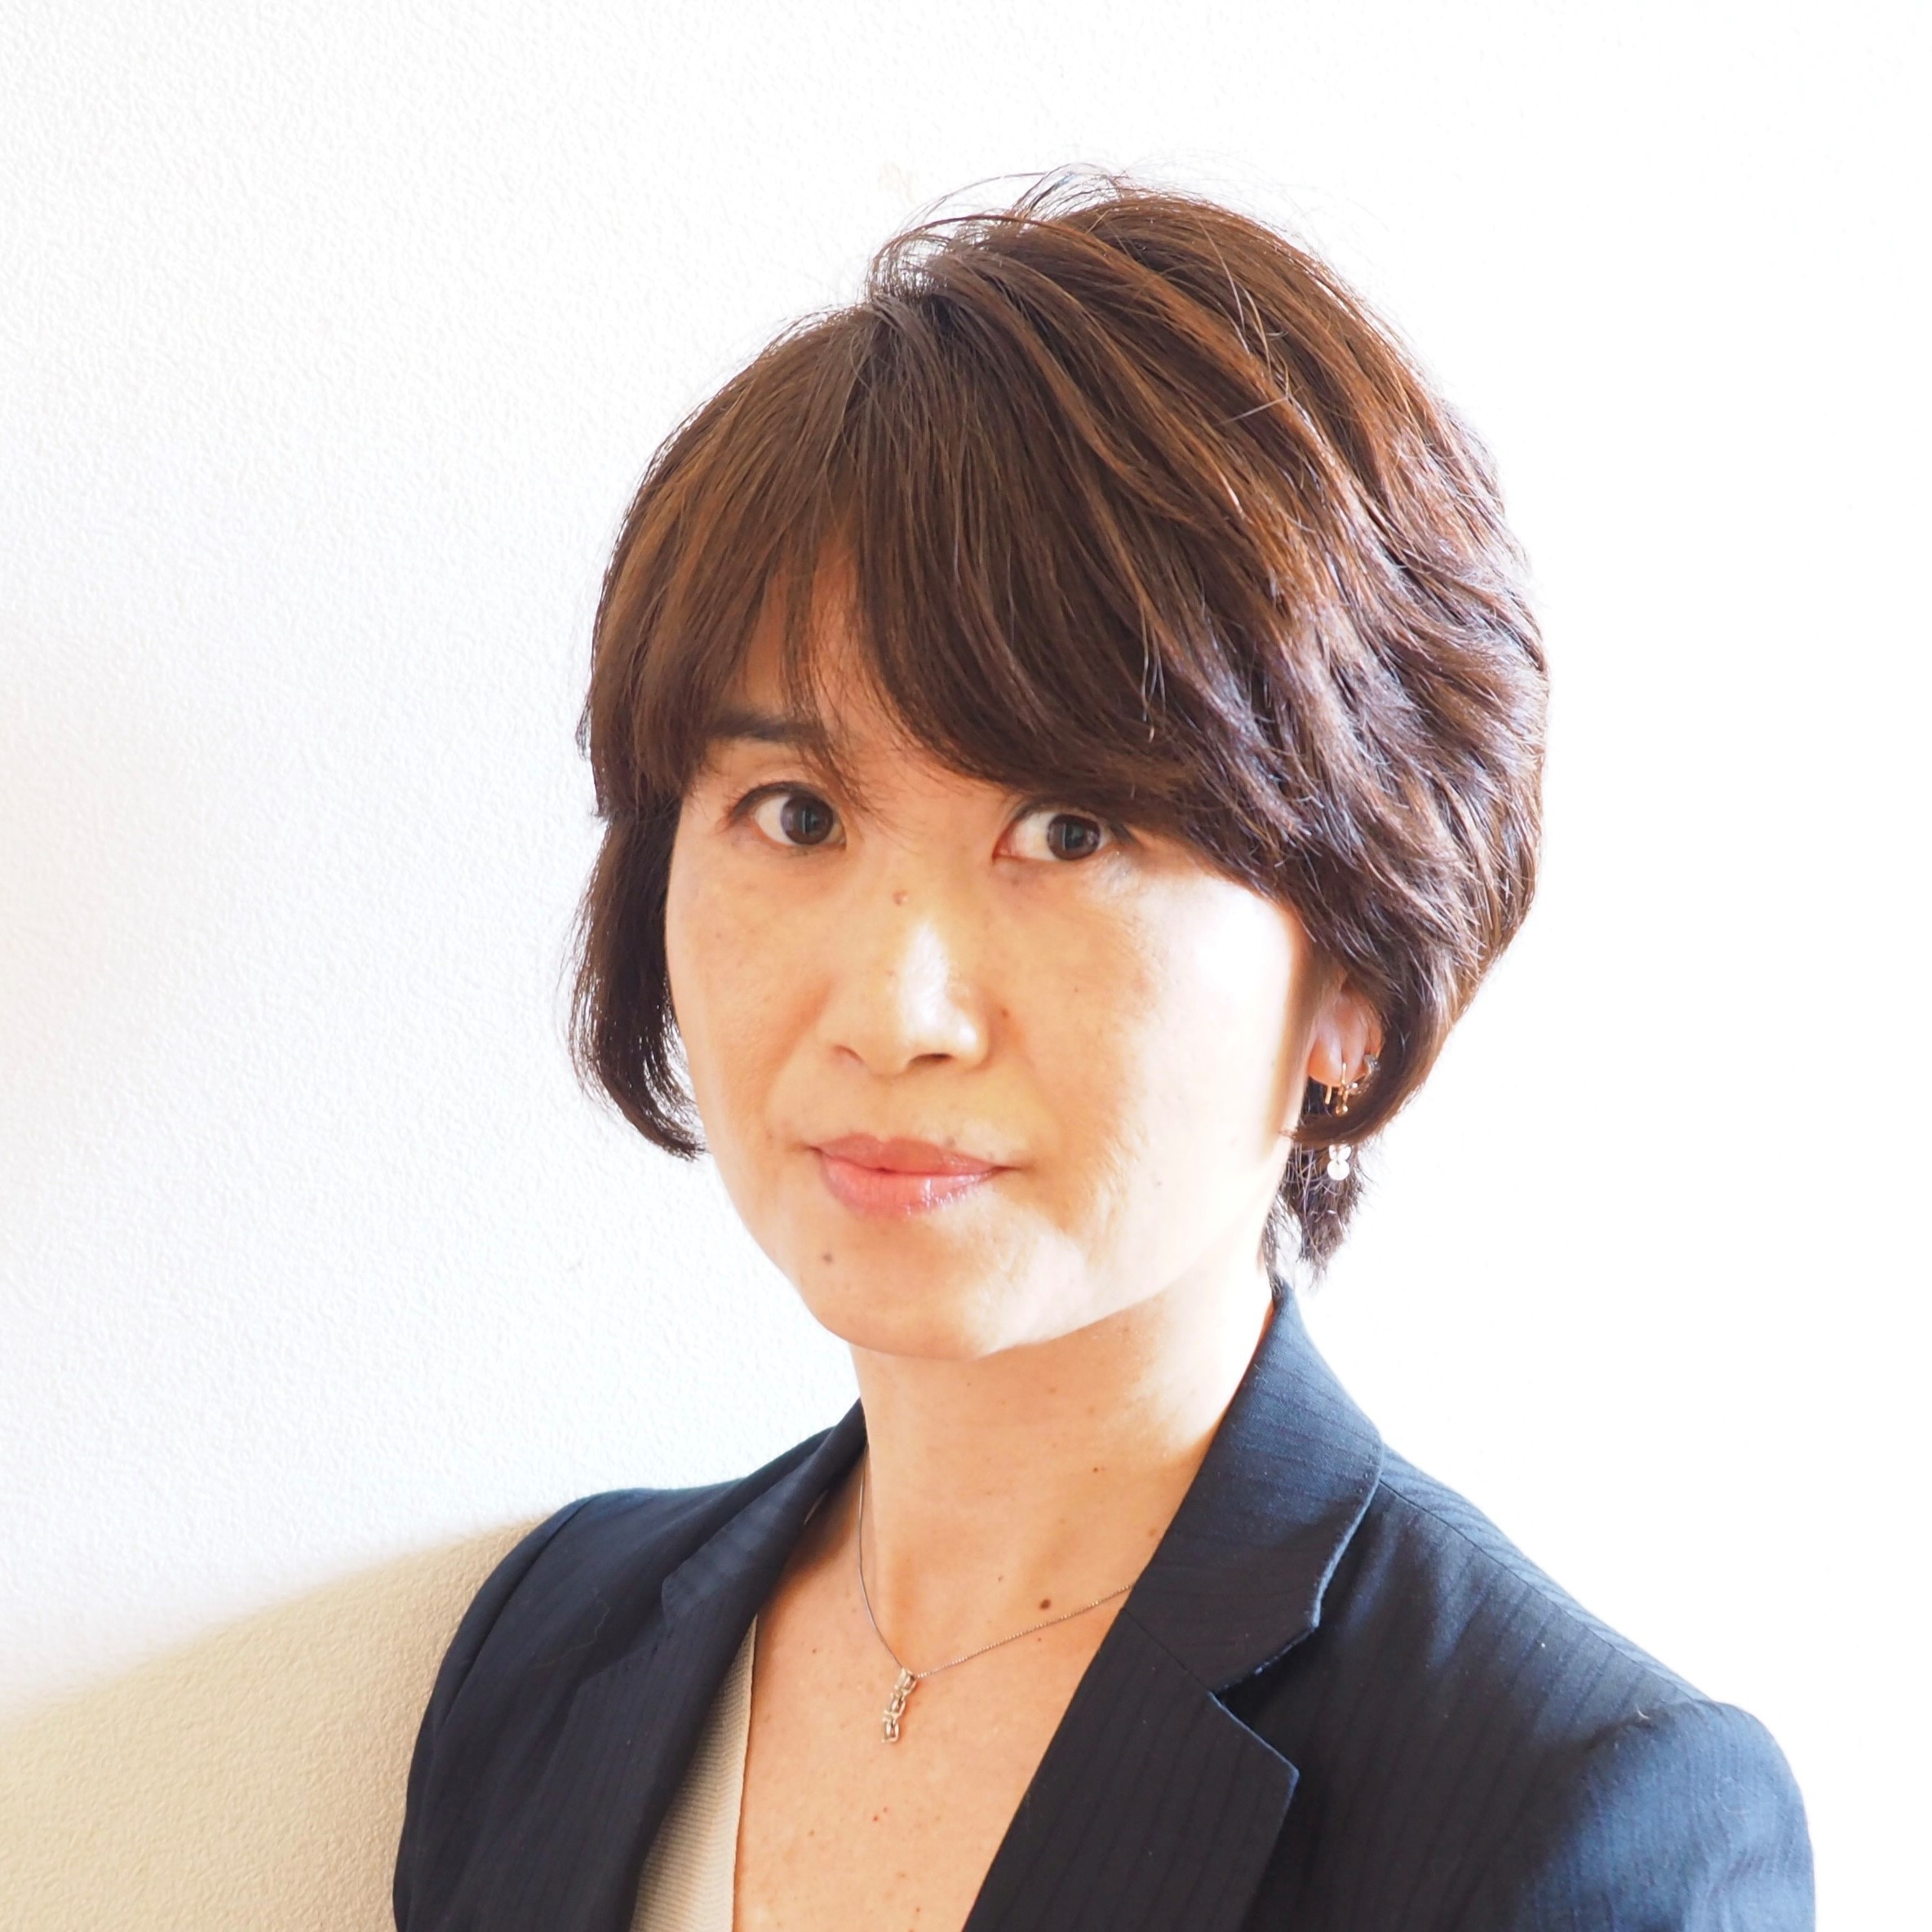  Keiko Yamaguchi